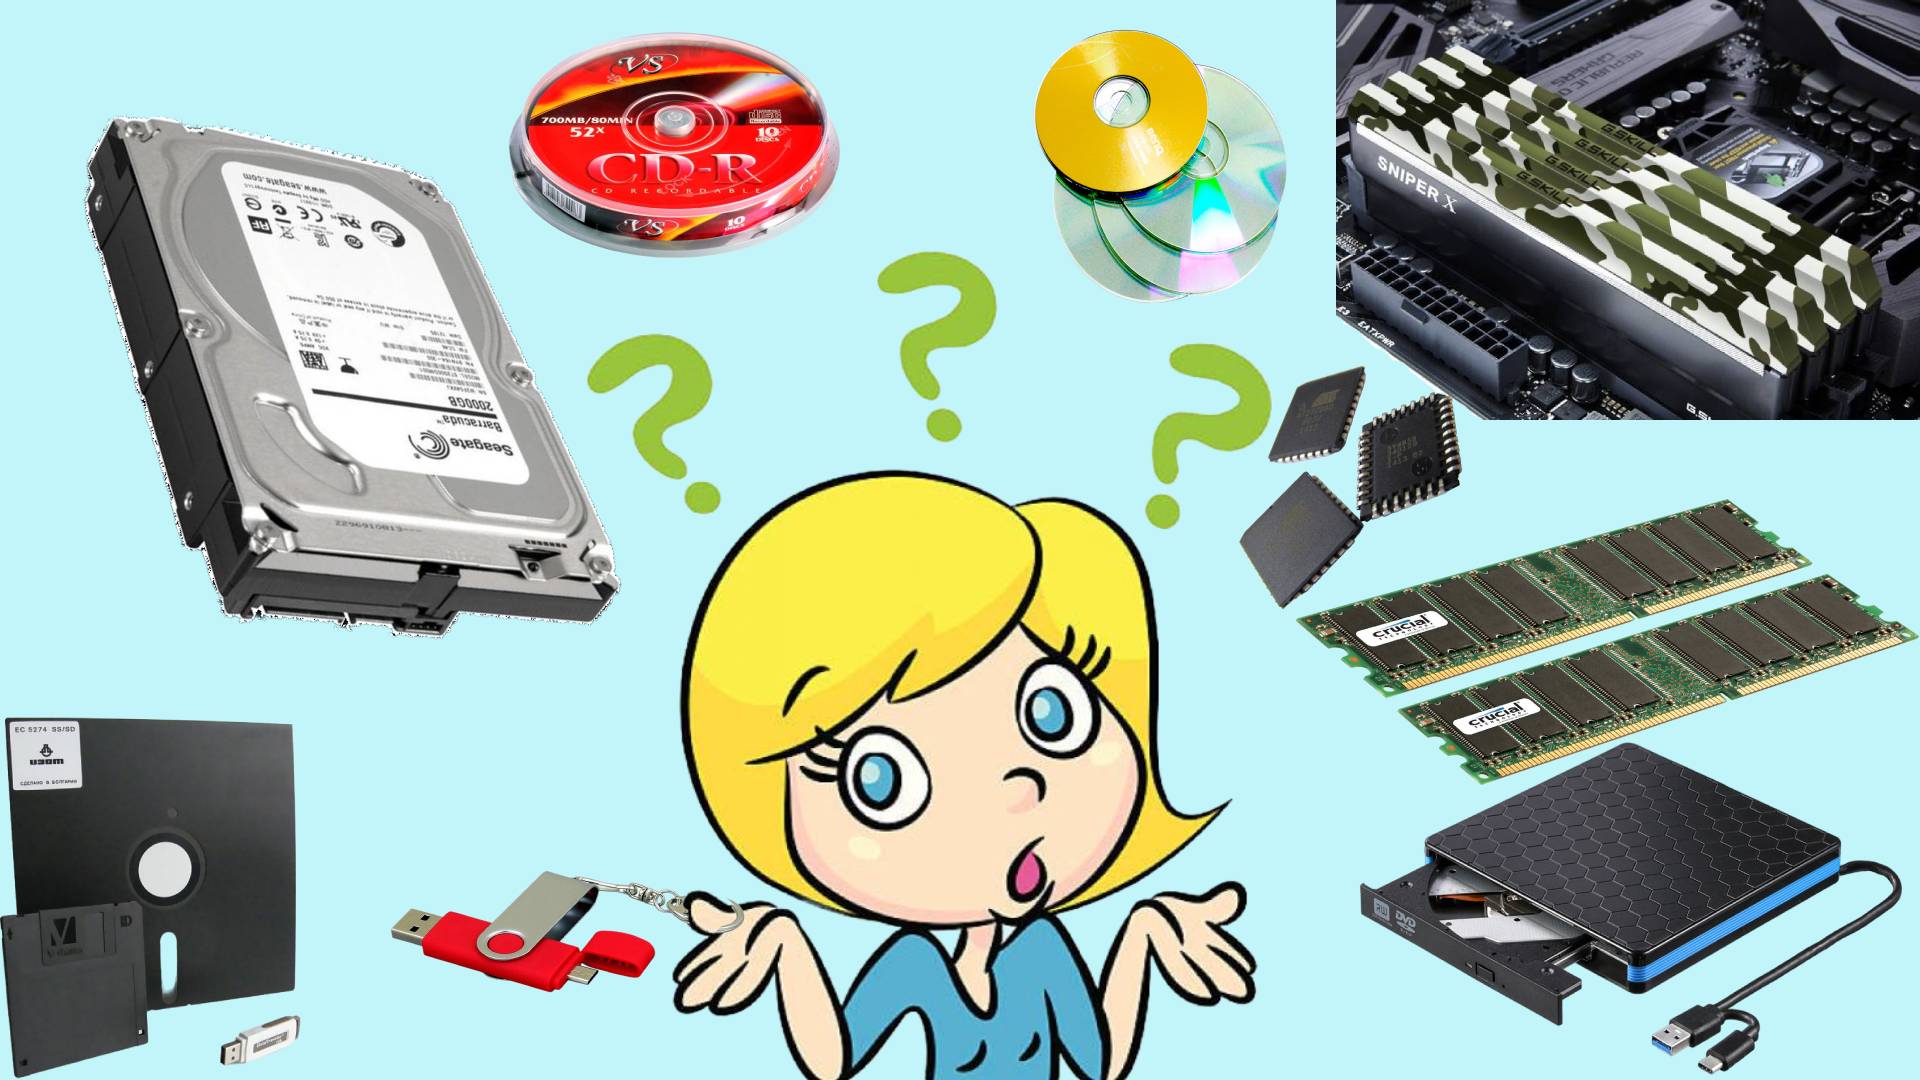 Устройства памяти дискета, жёсткмй диск, флешка, ПЗУ, планки ОЗУ